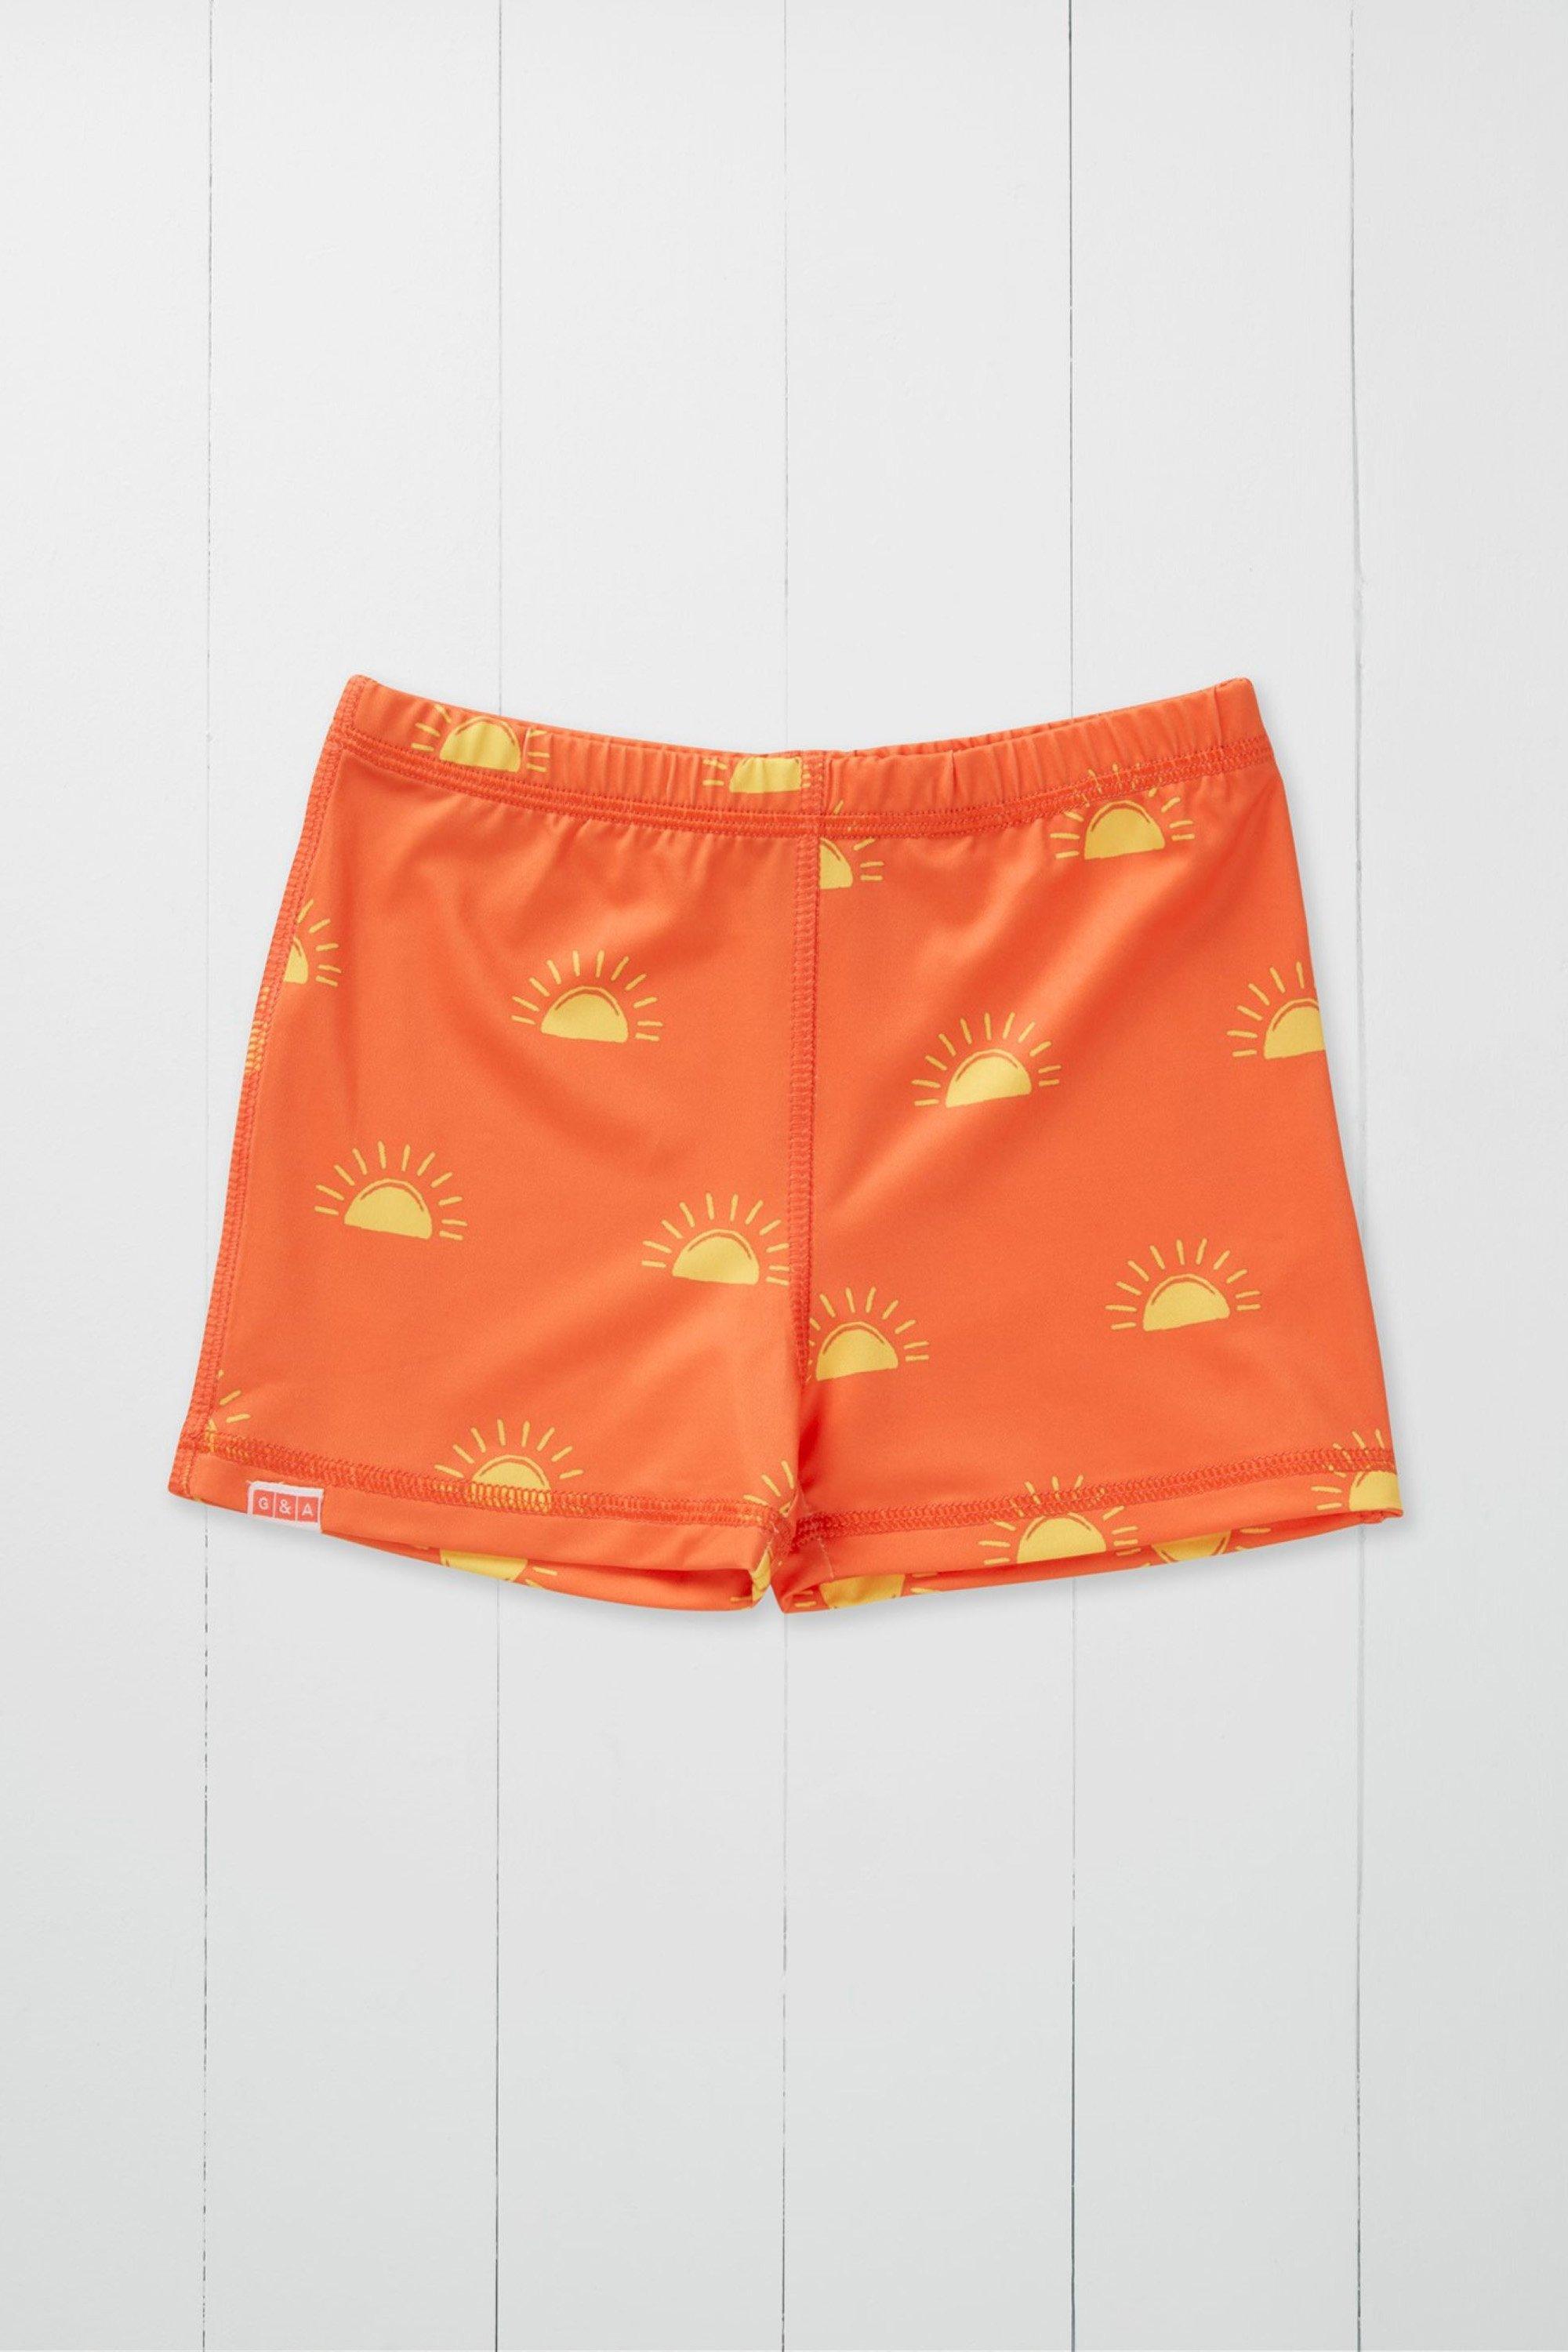 Детские шорты для плавания с принтом Sun Grass & Air, оранжевый шорты с аппликациями на 9 12 месяцев